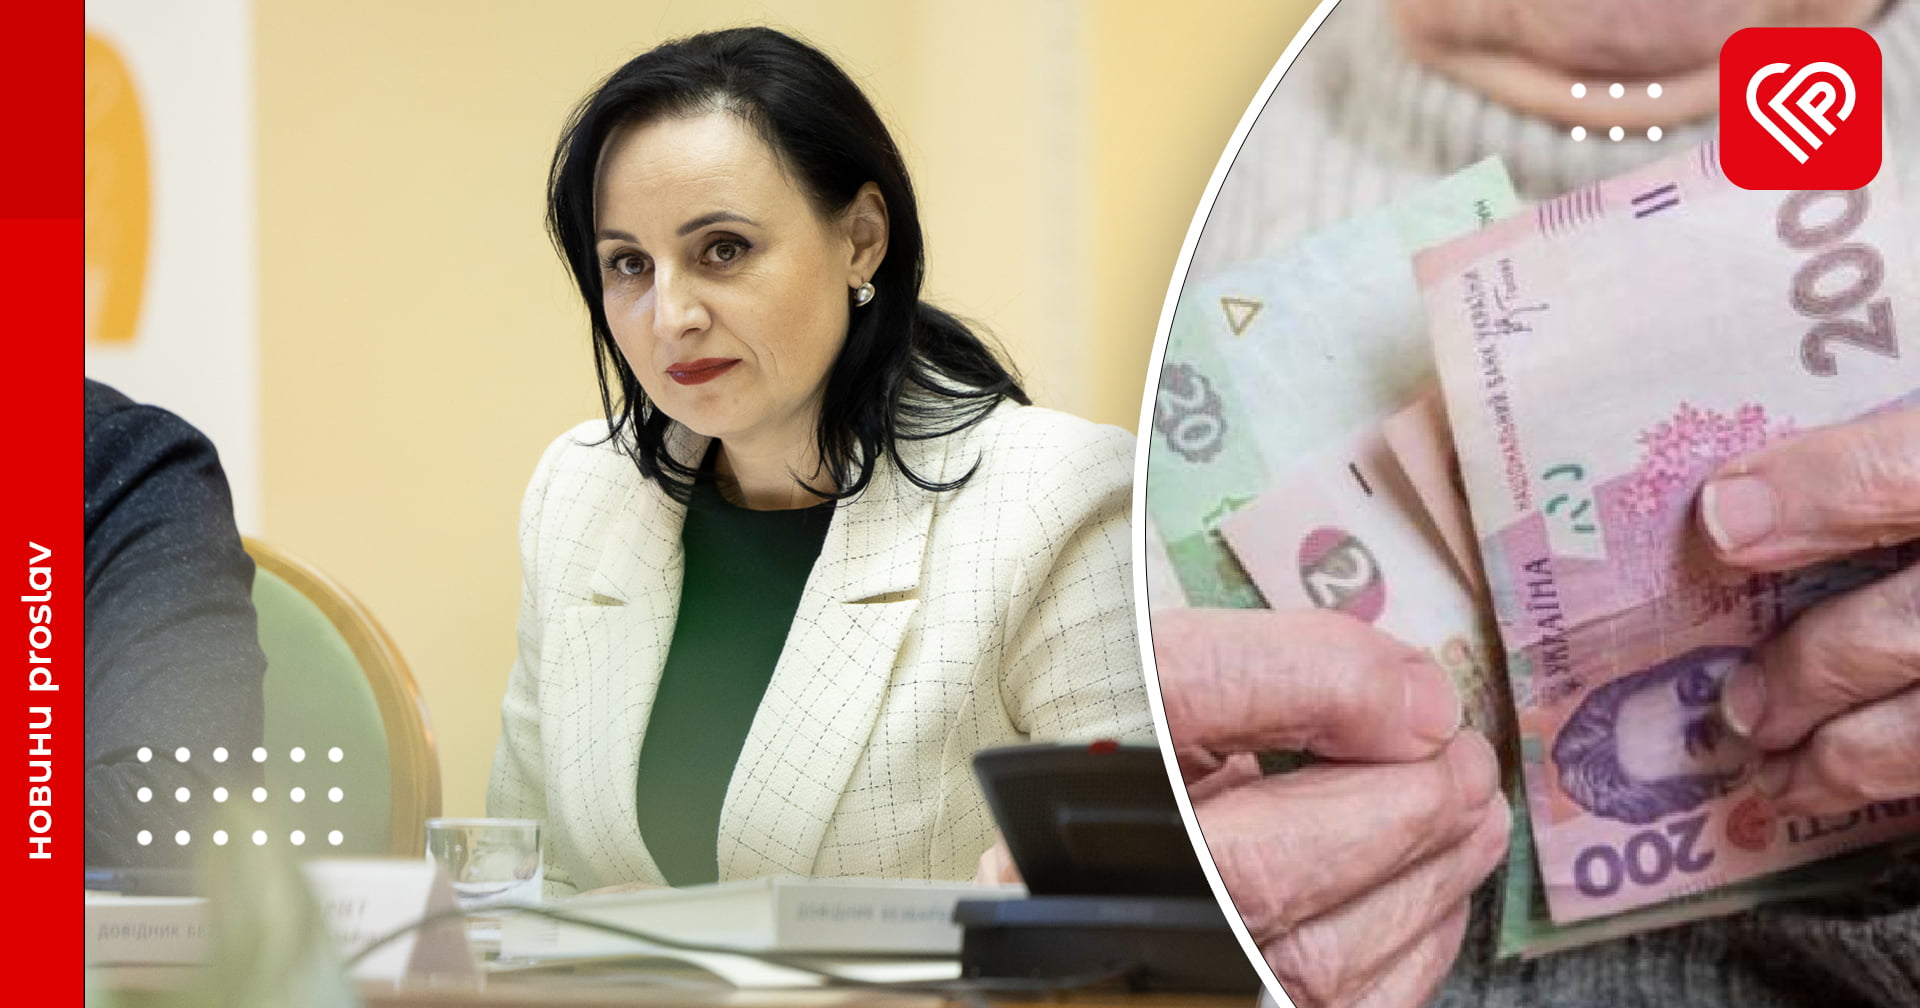 Після індексації пенсіонери отримають доплату від 400 до 700 гривень